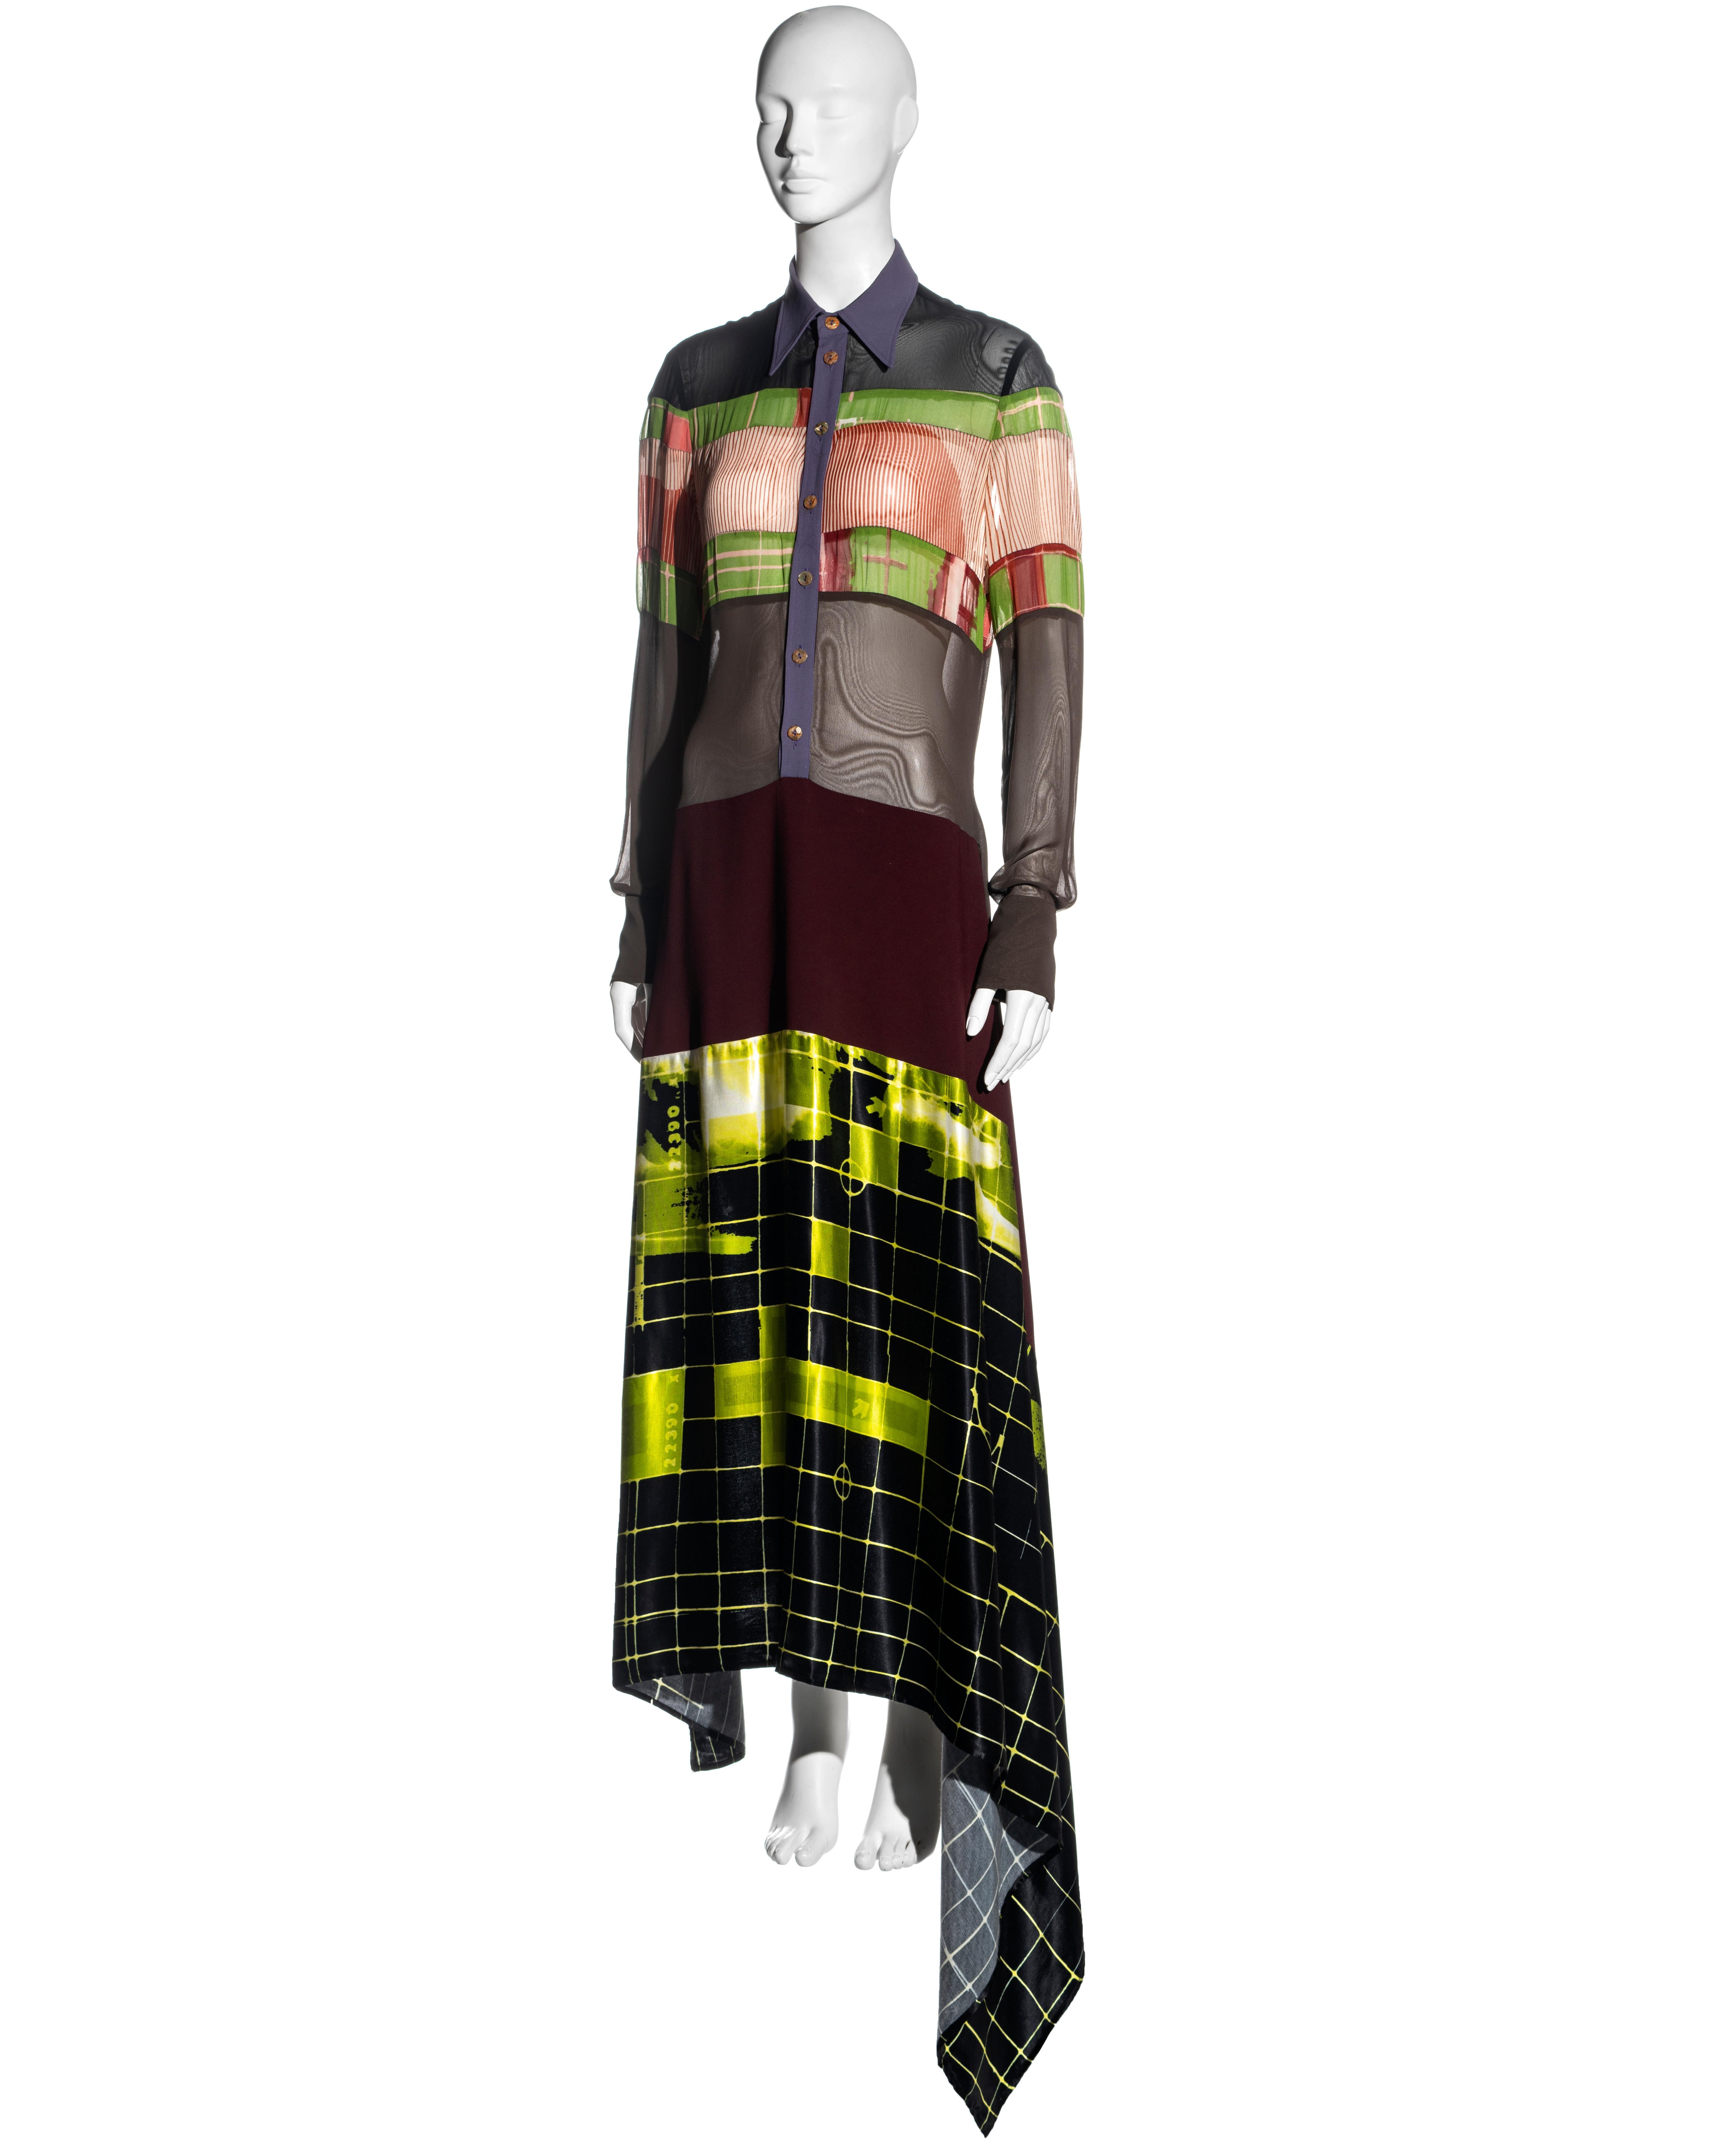 Jean Paul Gaulter 'Cyberhippie' shirt dress with wrap skirt, ss 1996 1